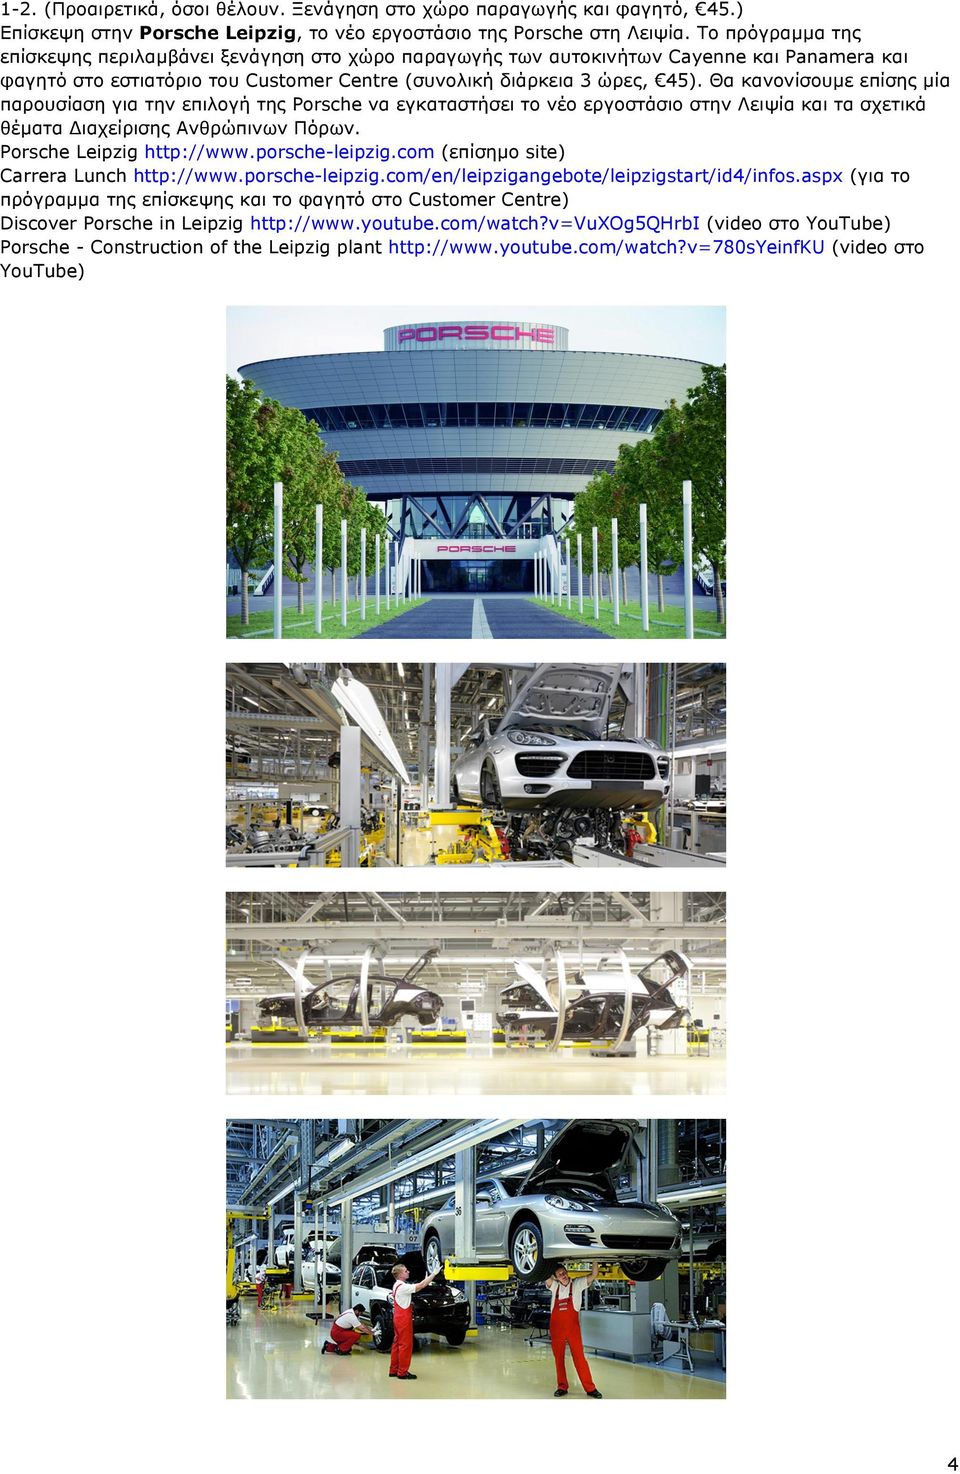 Θα κανονίσουµε επίσης µία παρουσίαση για την επιλογή της Porsche να εγκαταστήσει το νέο εργοστάσιο στην Λειψία και τα σχετικά θέµατα Διαχείρισης Ανθρώπινων Πόρων. Porsche Leipzig http://www.